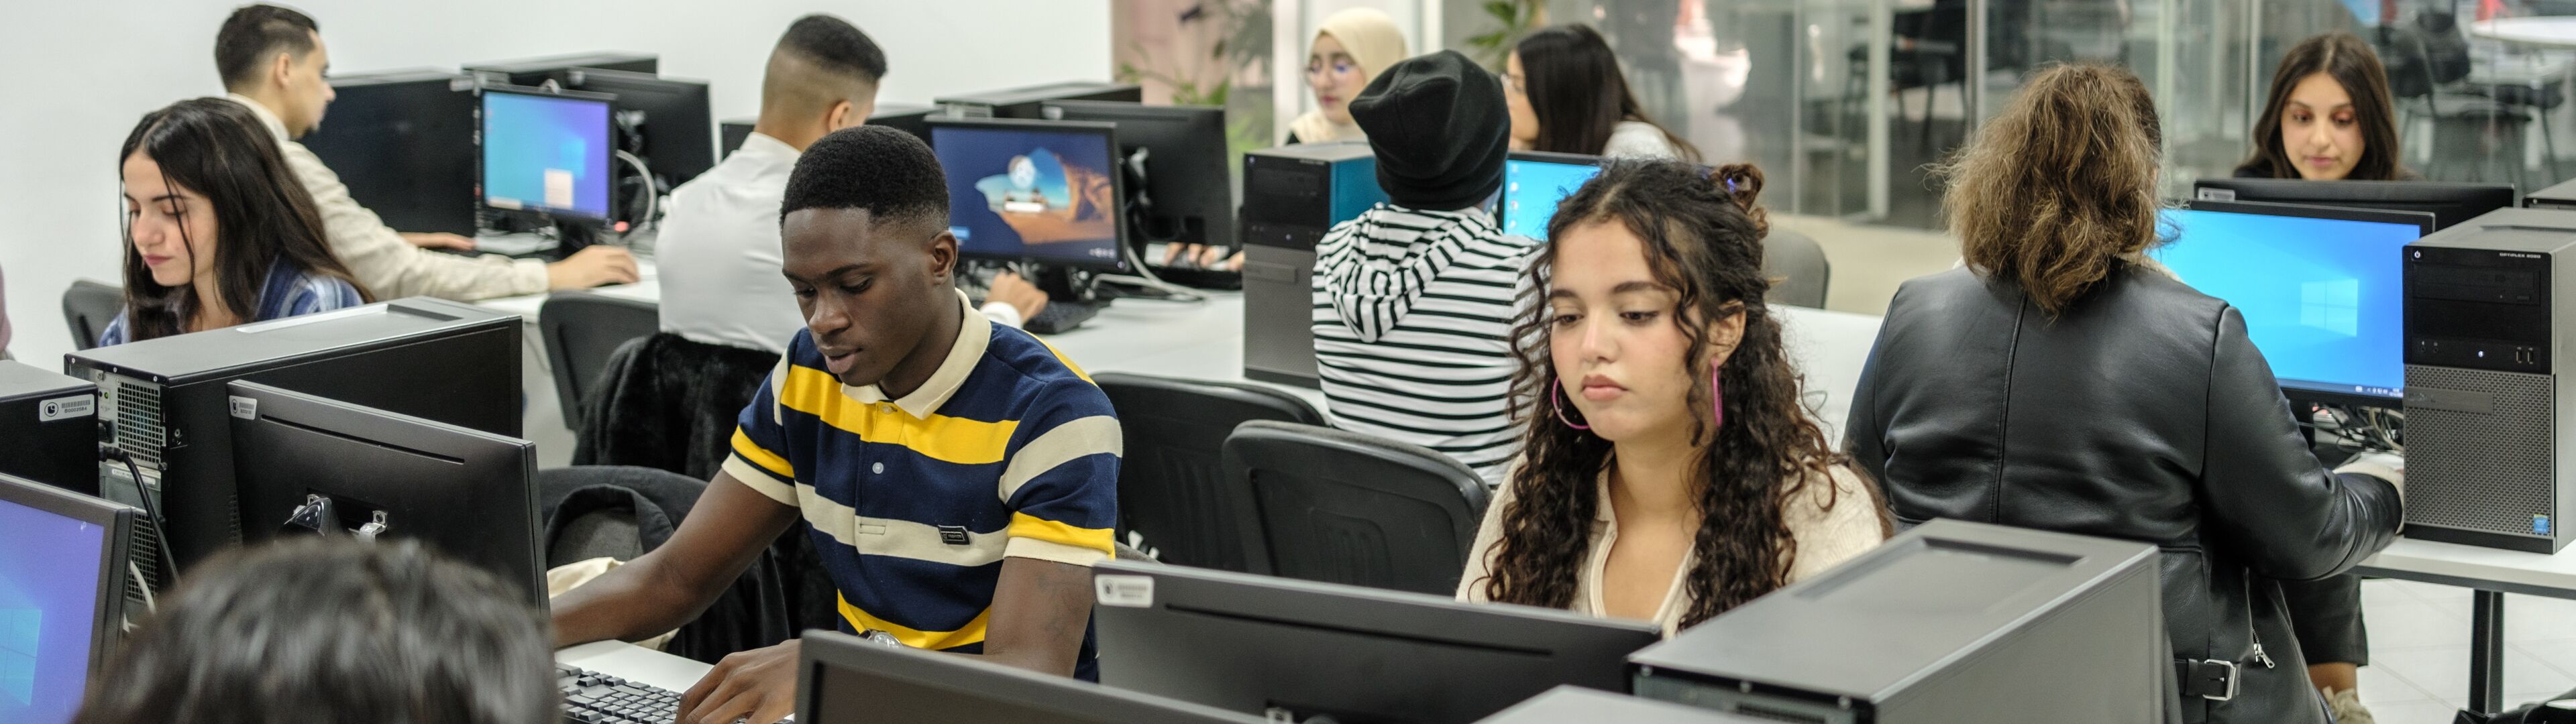 Des étudiants travaillant avec application dans une salle informatique équipée de PC de bureau.